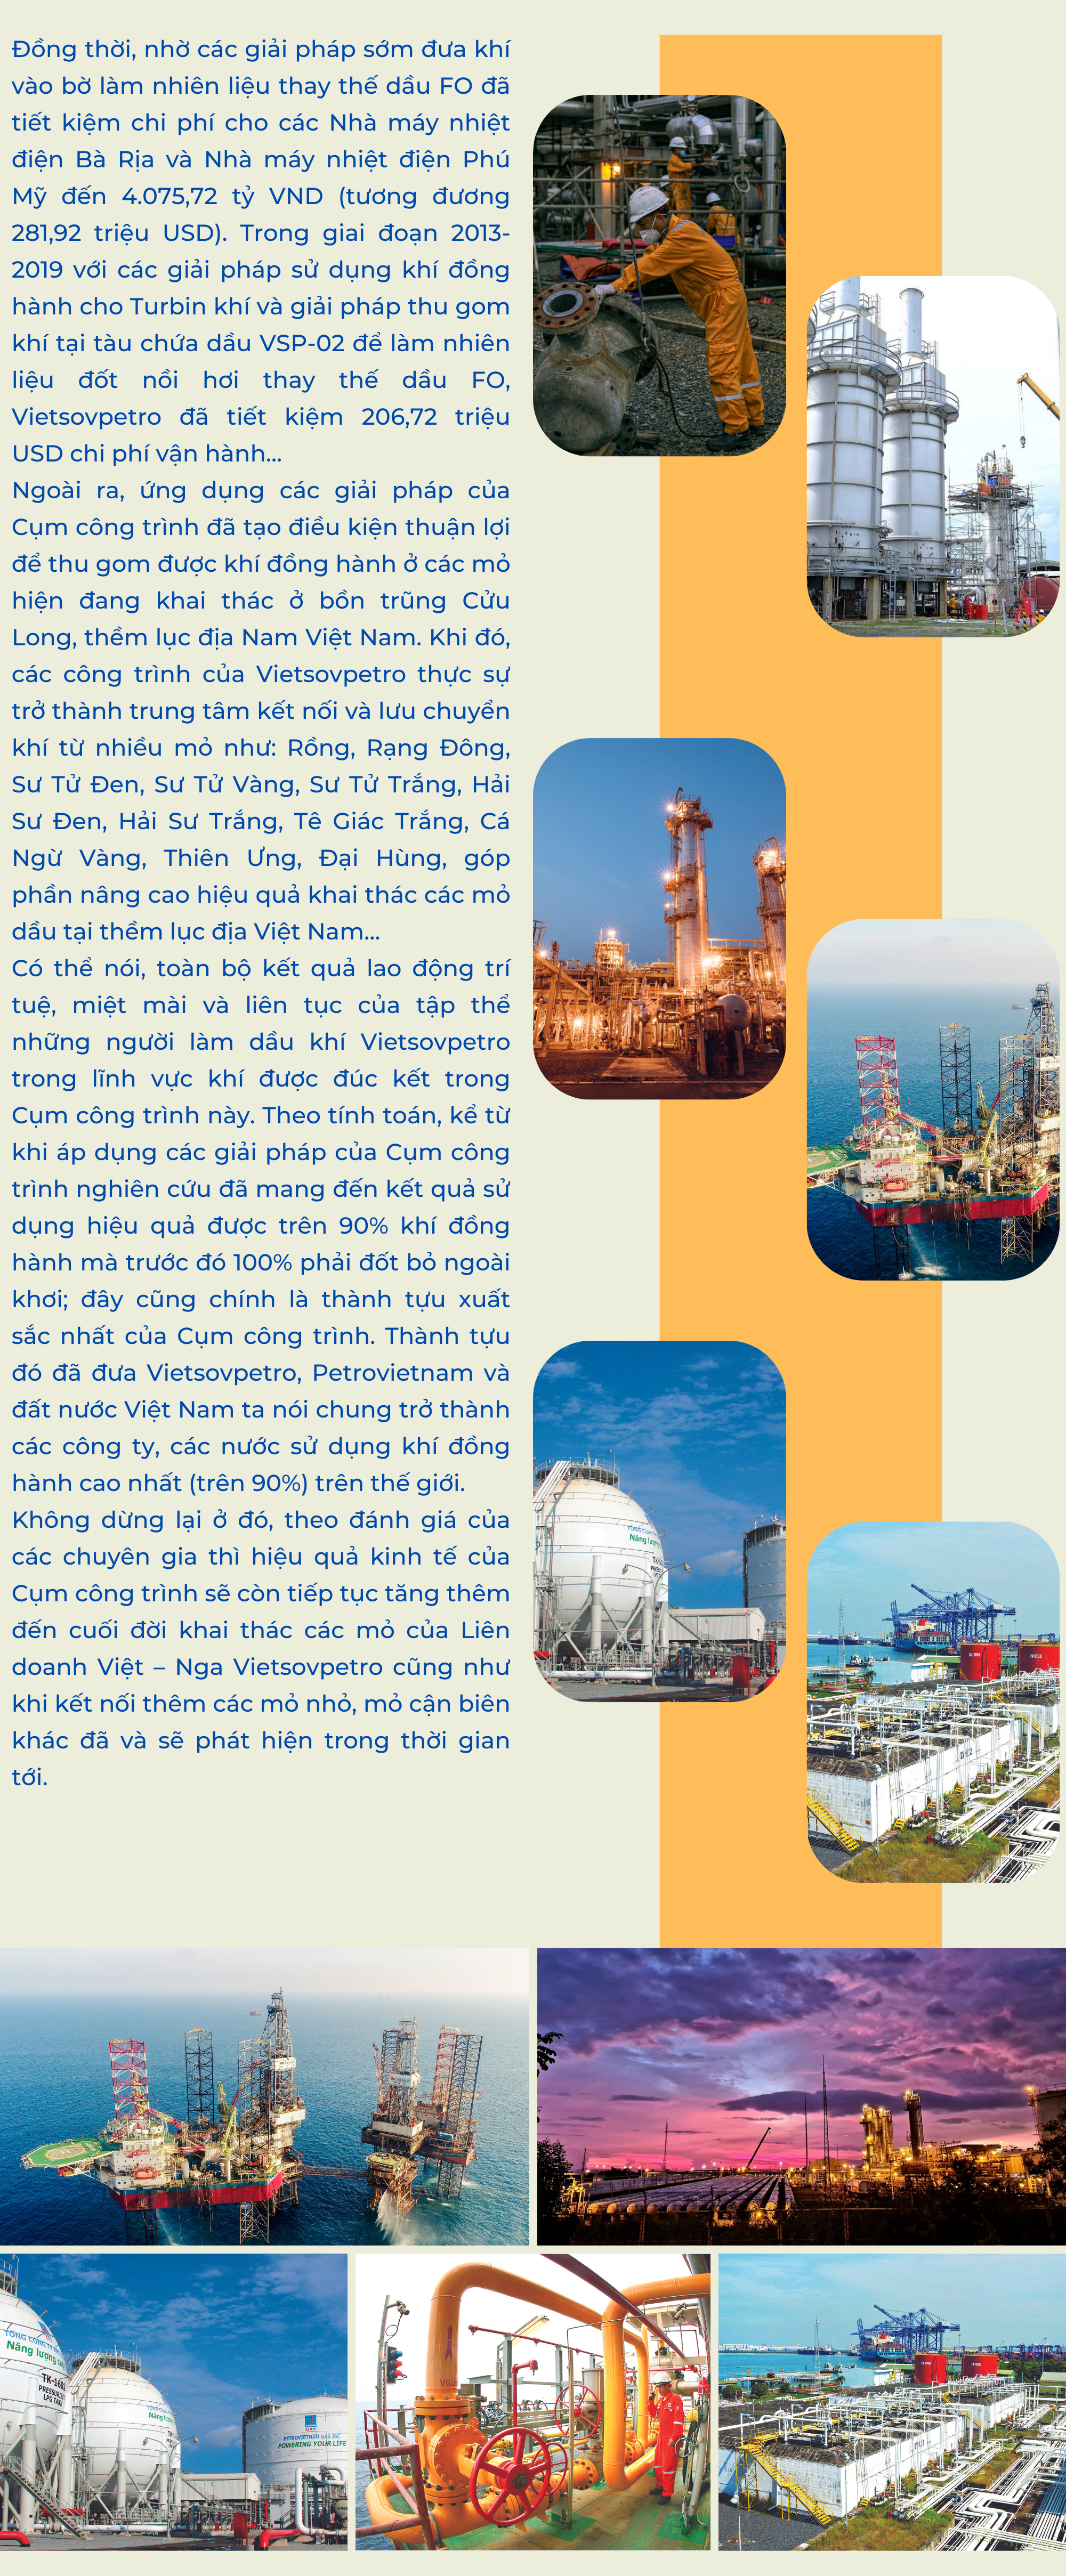 Tiền đề, nền tảng vững chắc của ngành công nghiệp Khí Việt Nam